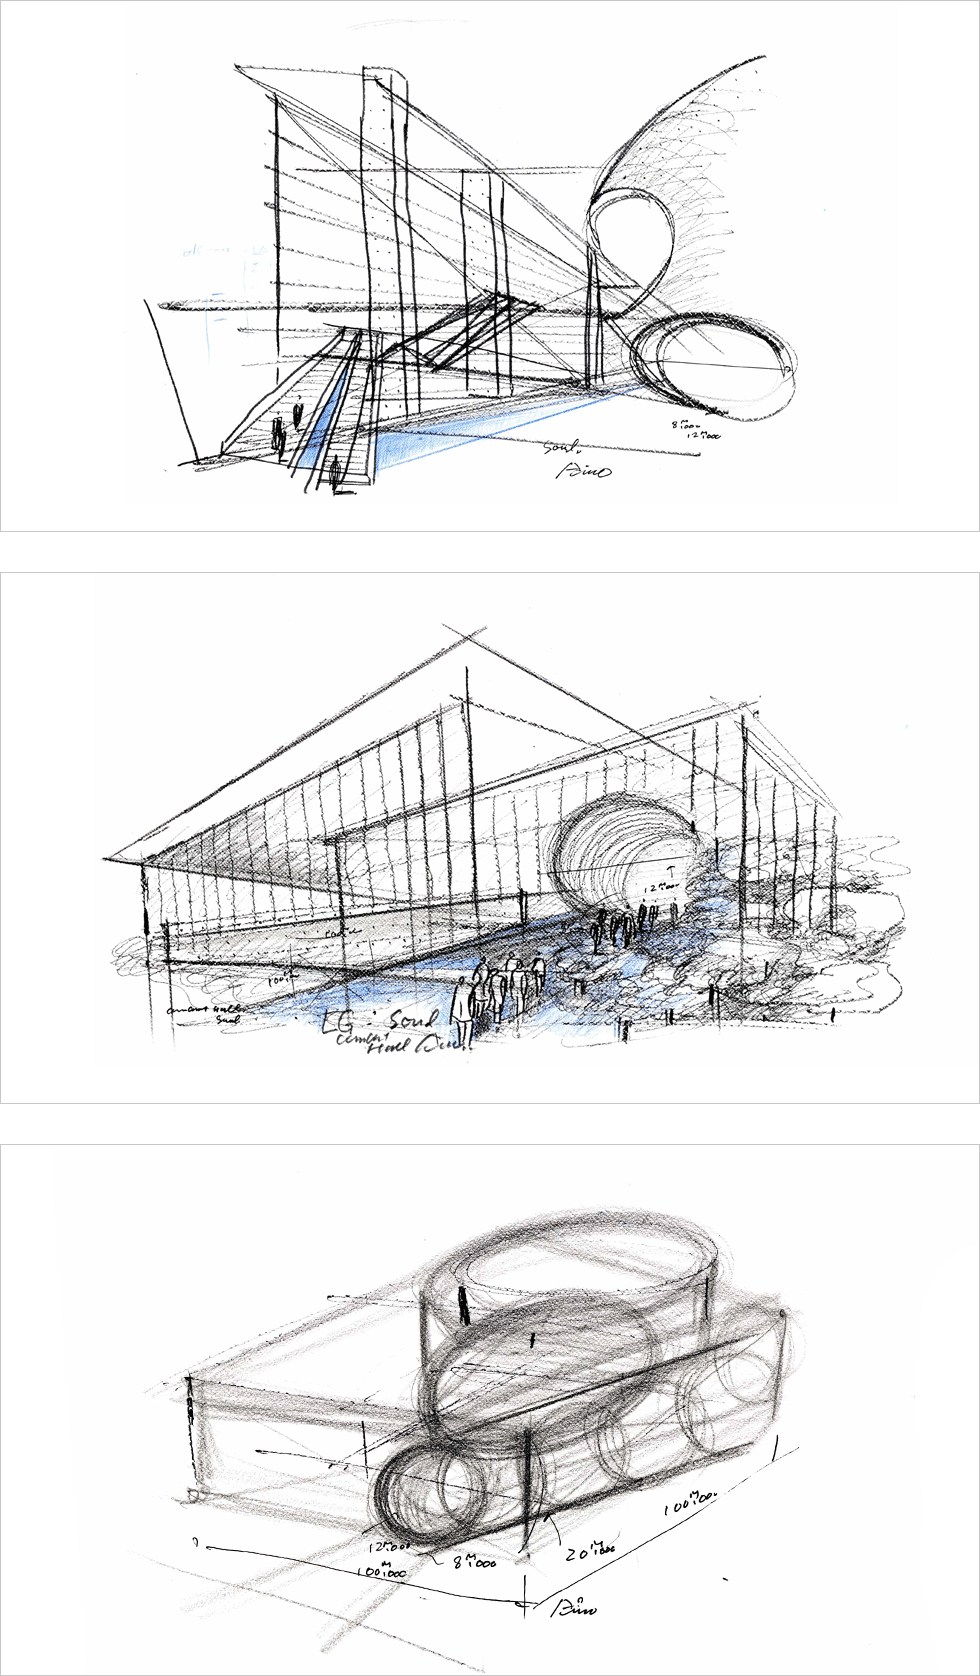 Ando Tadao Sketch Image